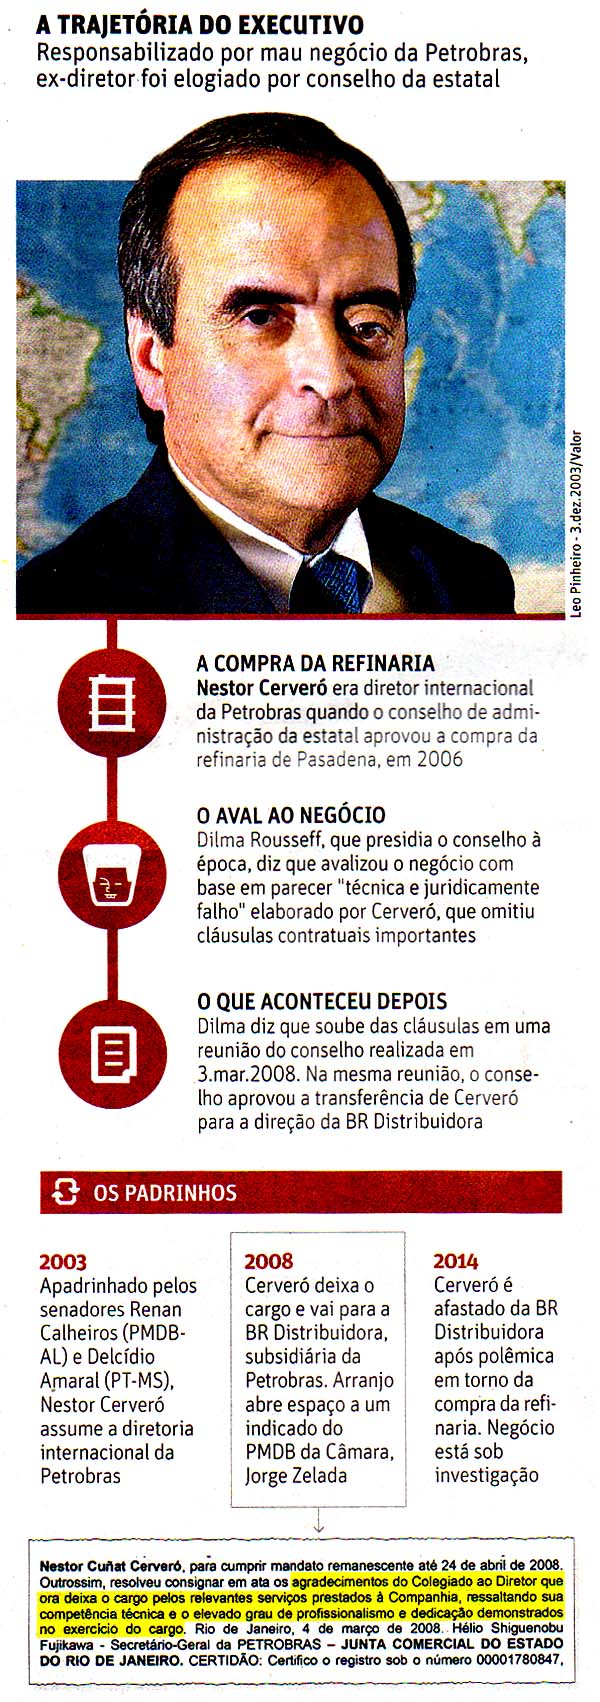 Folha de So Paulo - Poder - A4 - 26/03/2014 - Foto: Leo Pinheiro/3.dez.2003/Valor